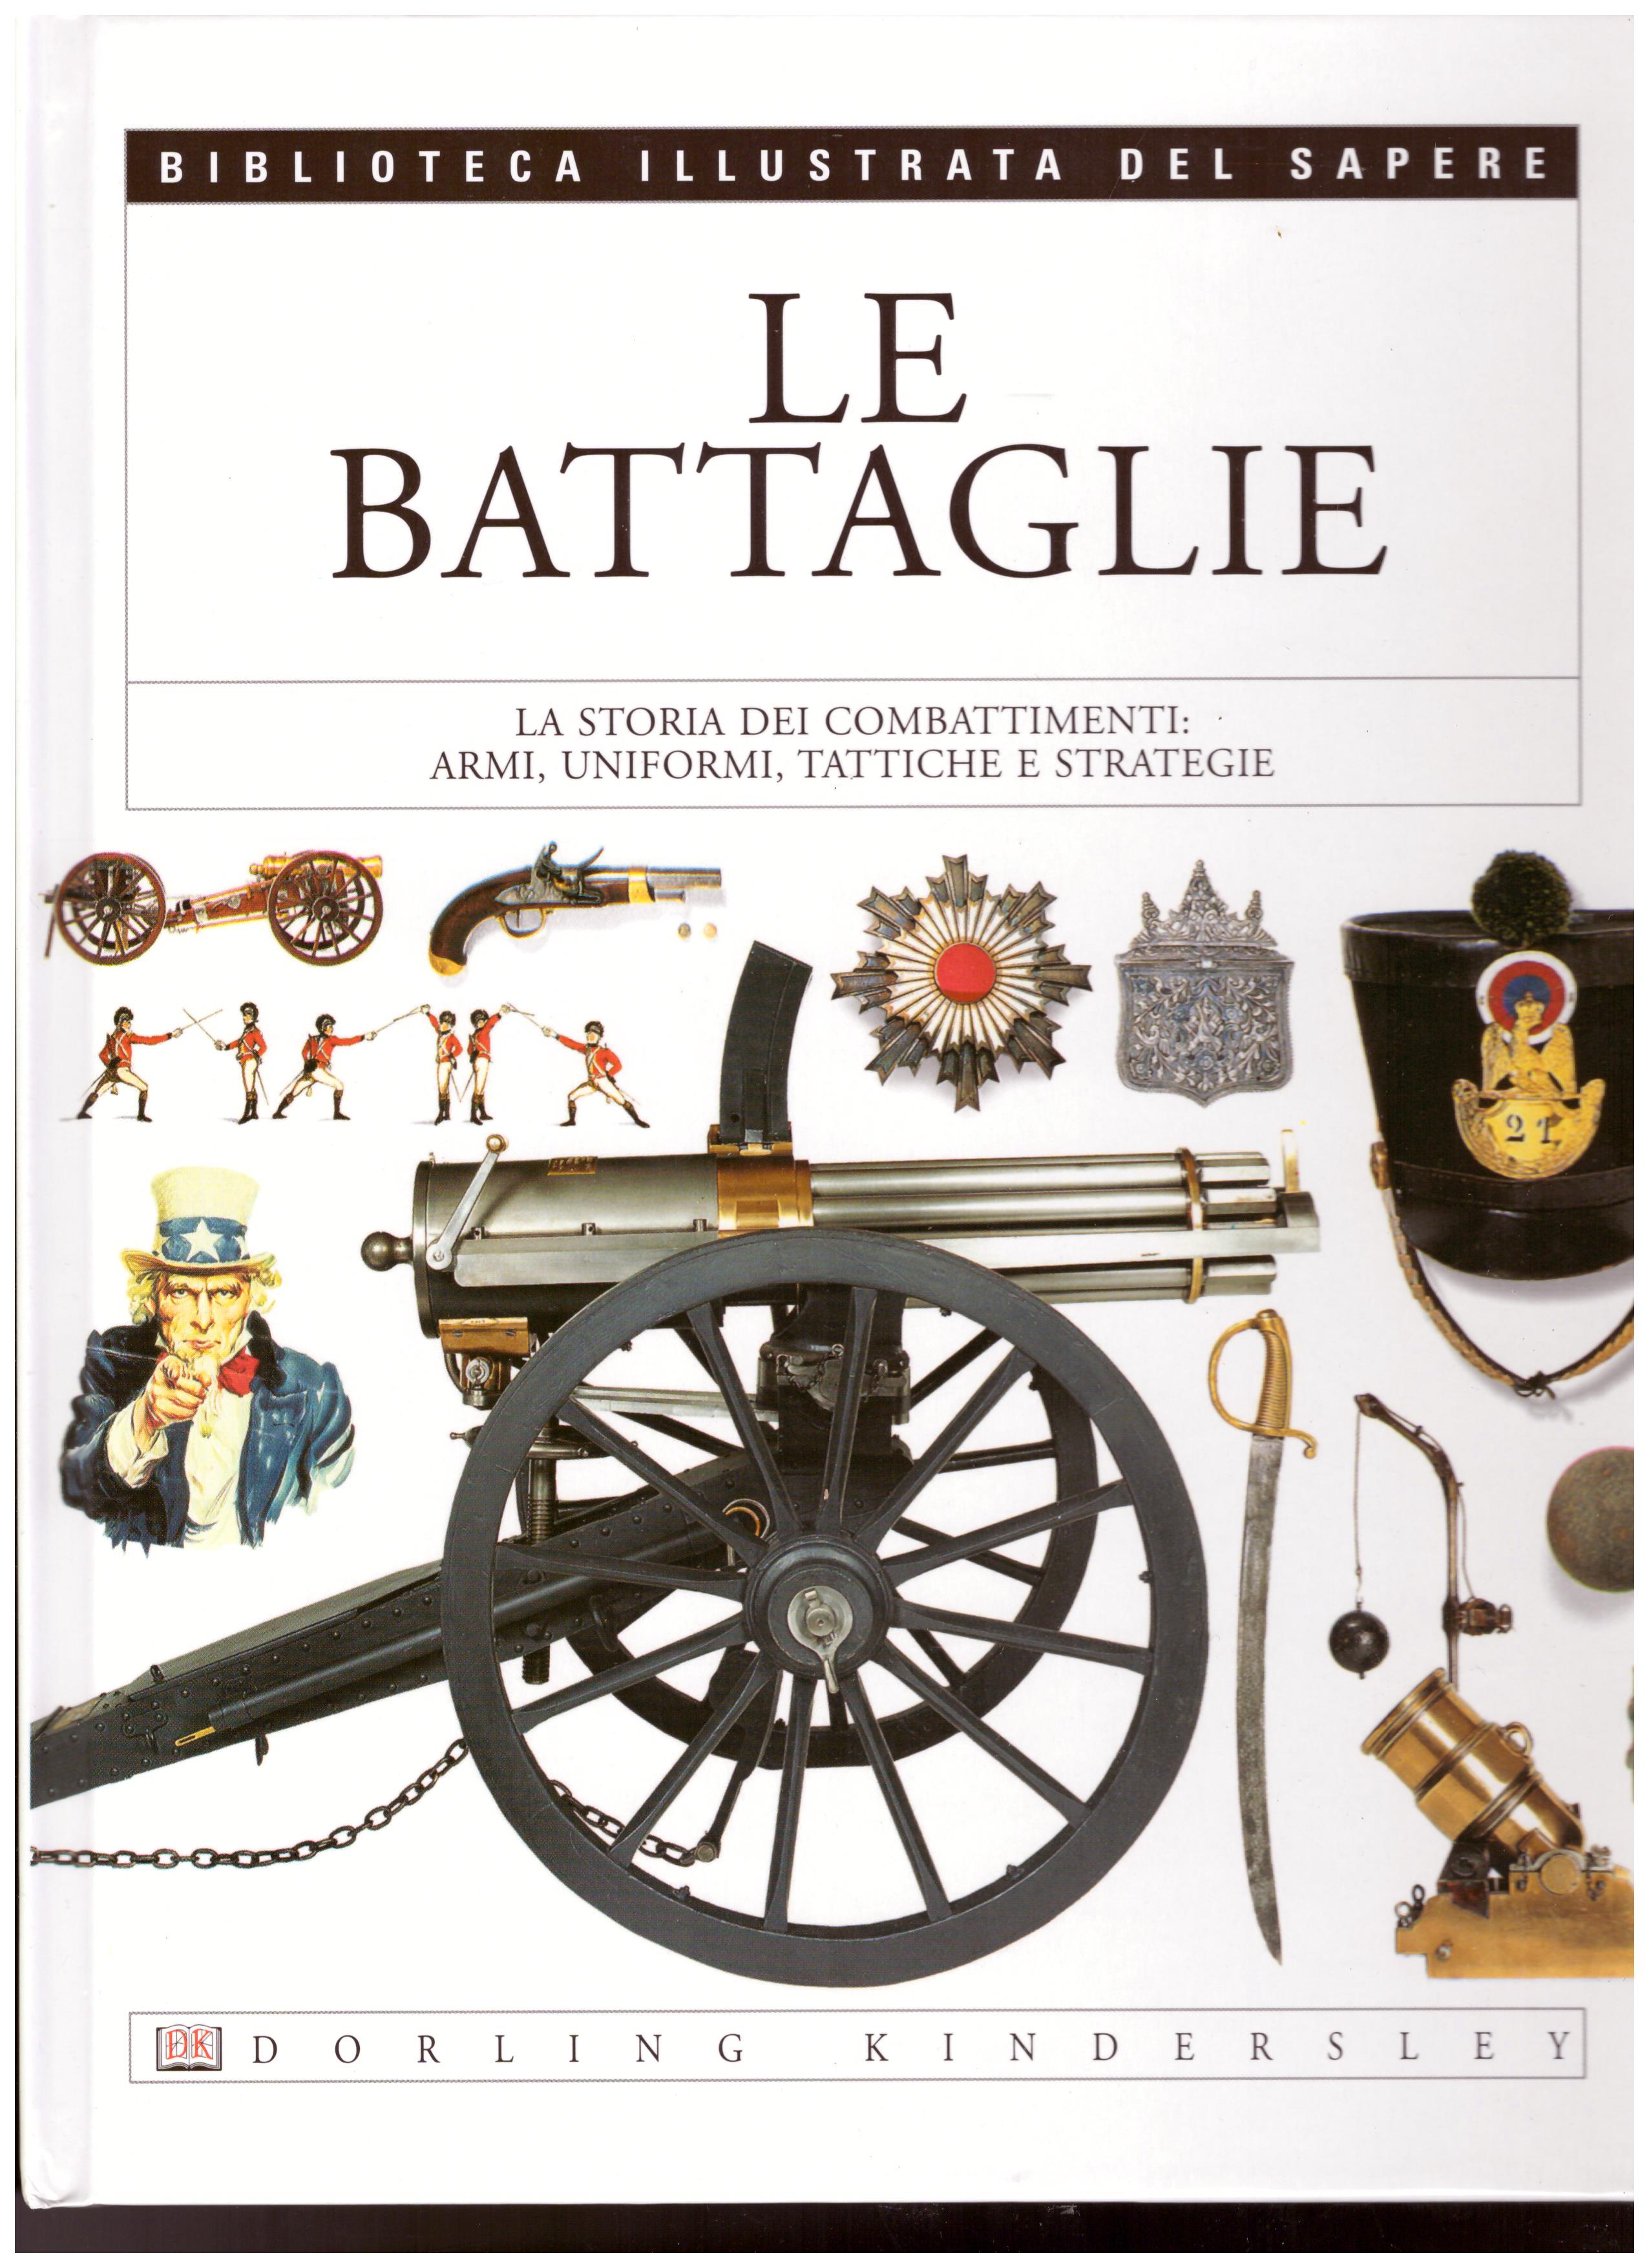 Titolo: Le battaglie N.16      Autore: AA.VV.      Editore: Dorling Kindersley, 2004